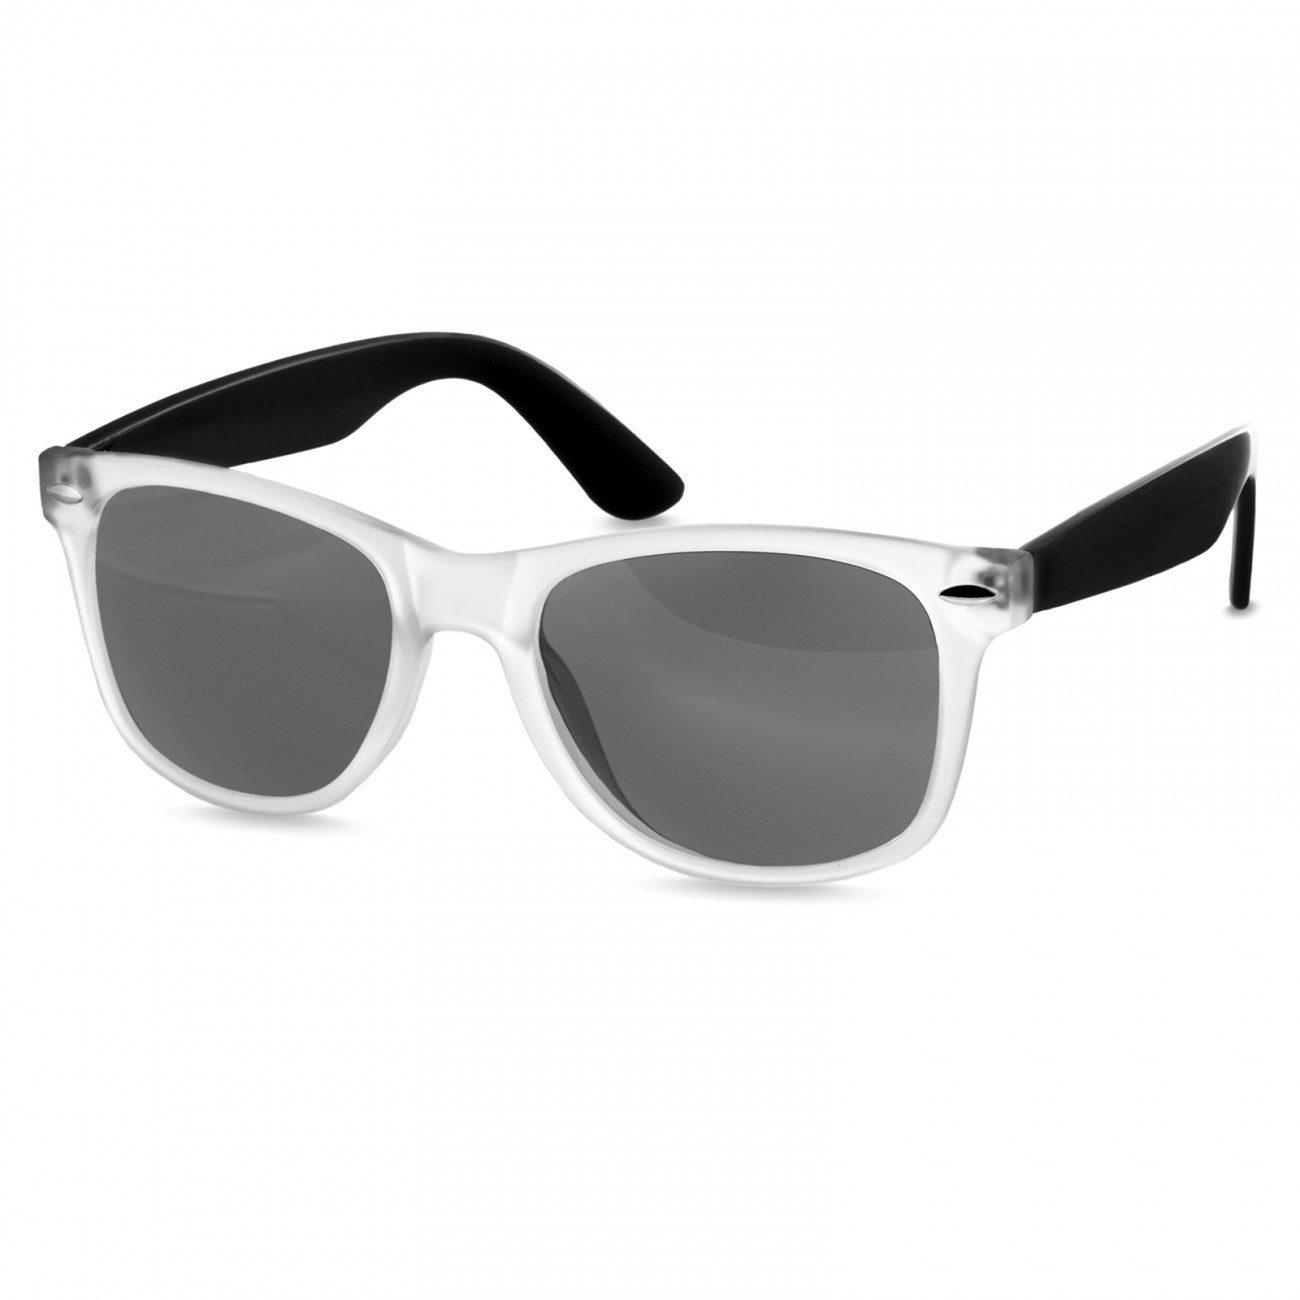 Caspar Sonnenbrille SG031 Unisex Classic Retro Design Sonnenbrille